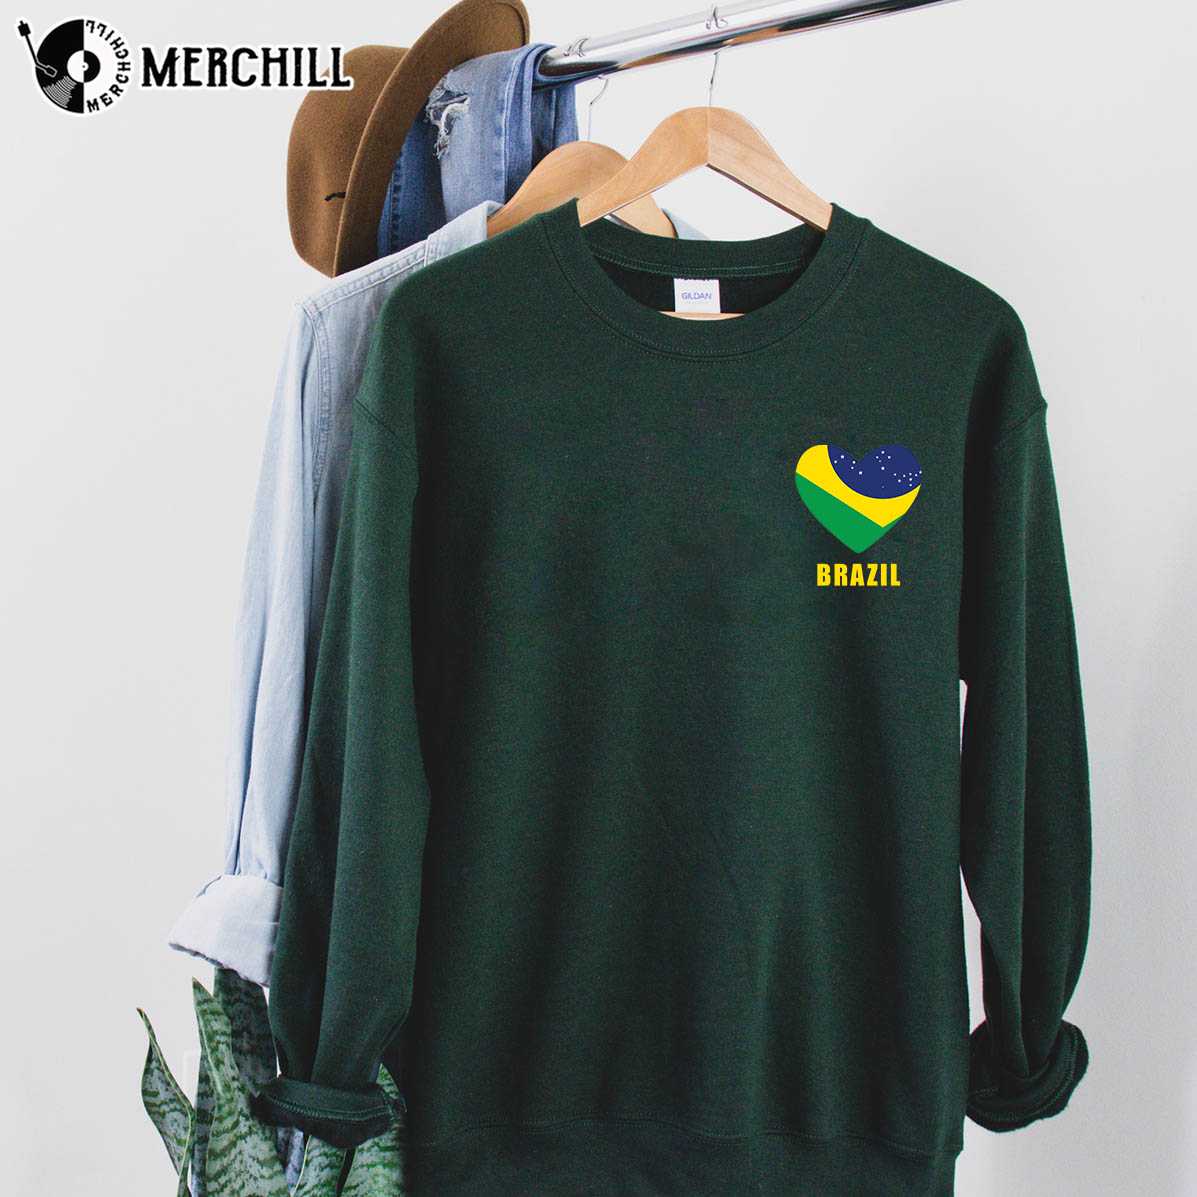 Heart Shape Brazil Flag Shirt Brasil Gift Ideas - Happy Place for Music  Lovers